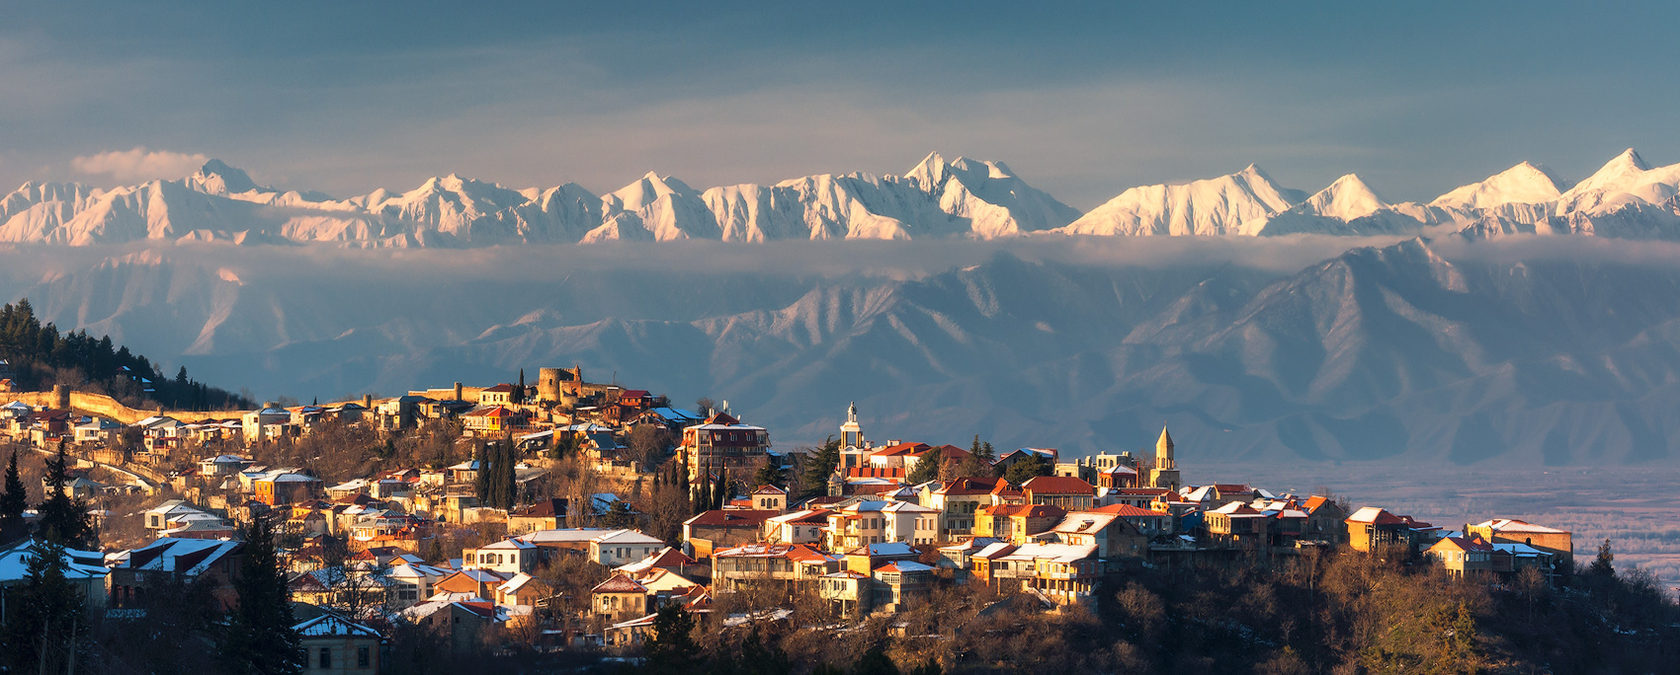 Пейзажи Грузии панорамные фото